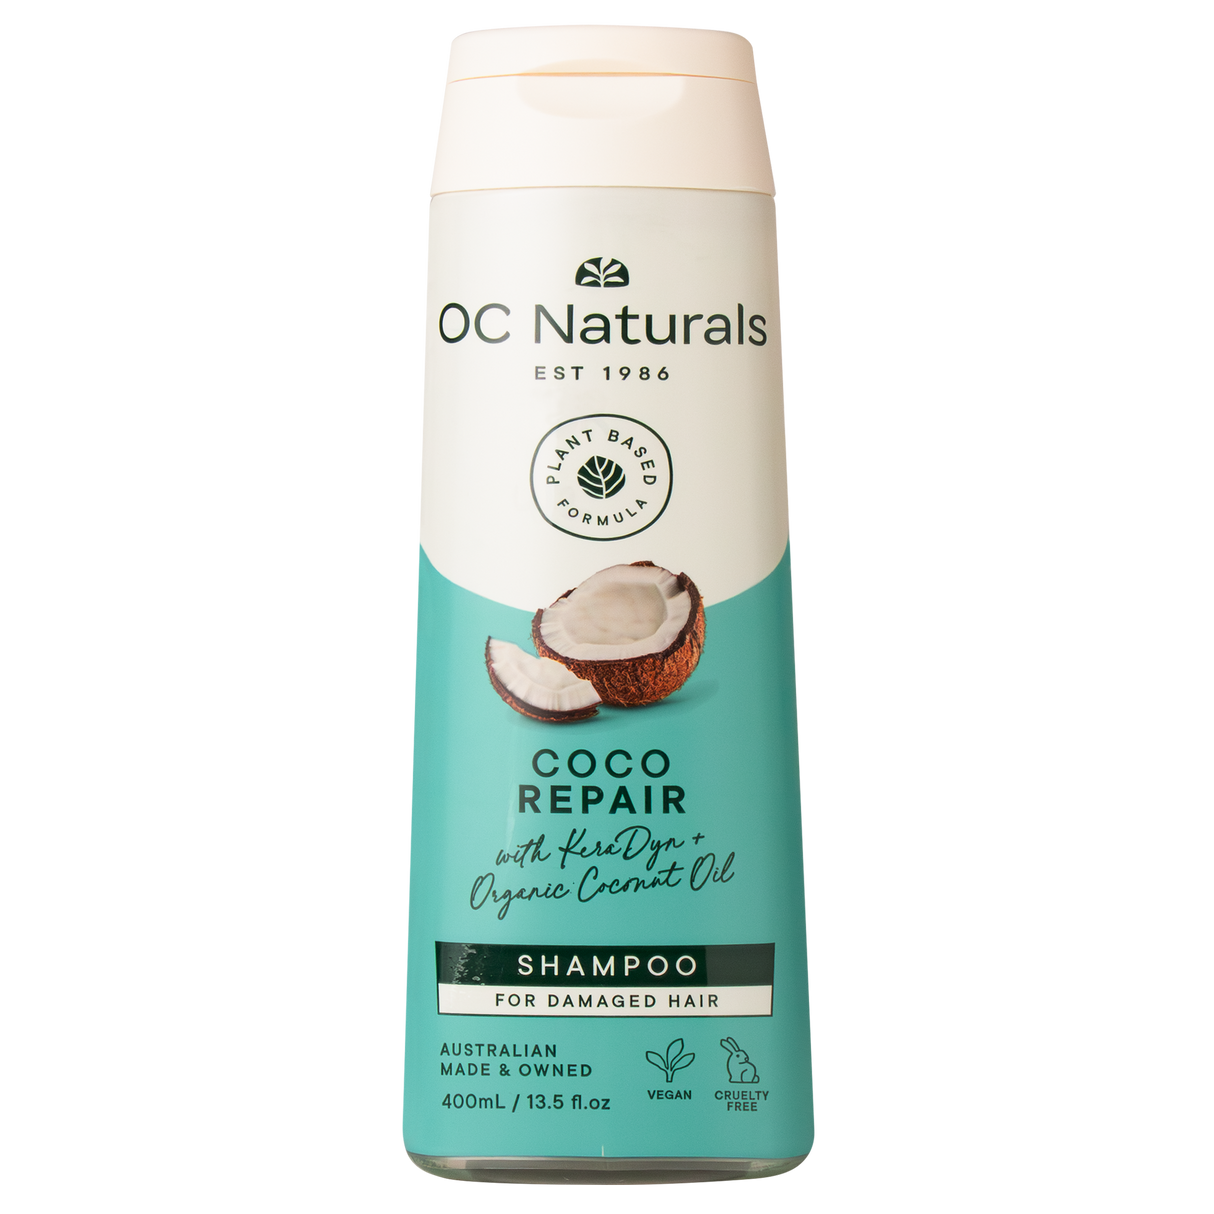 OC Naturals Coco Repair Shampoo 400ml